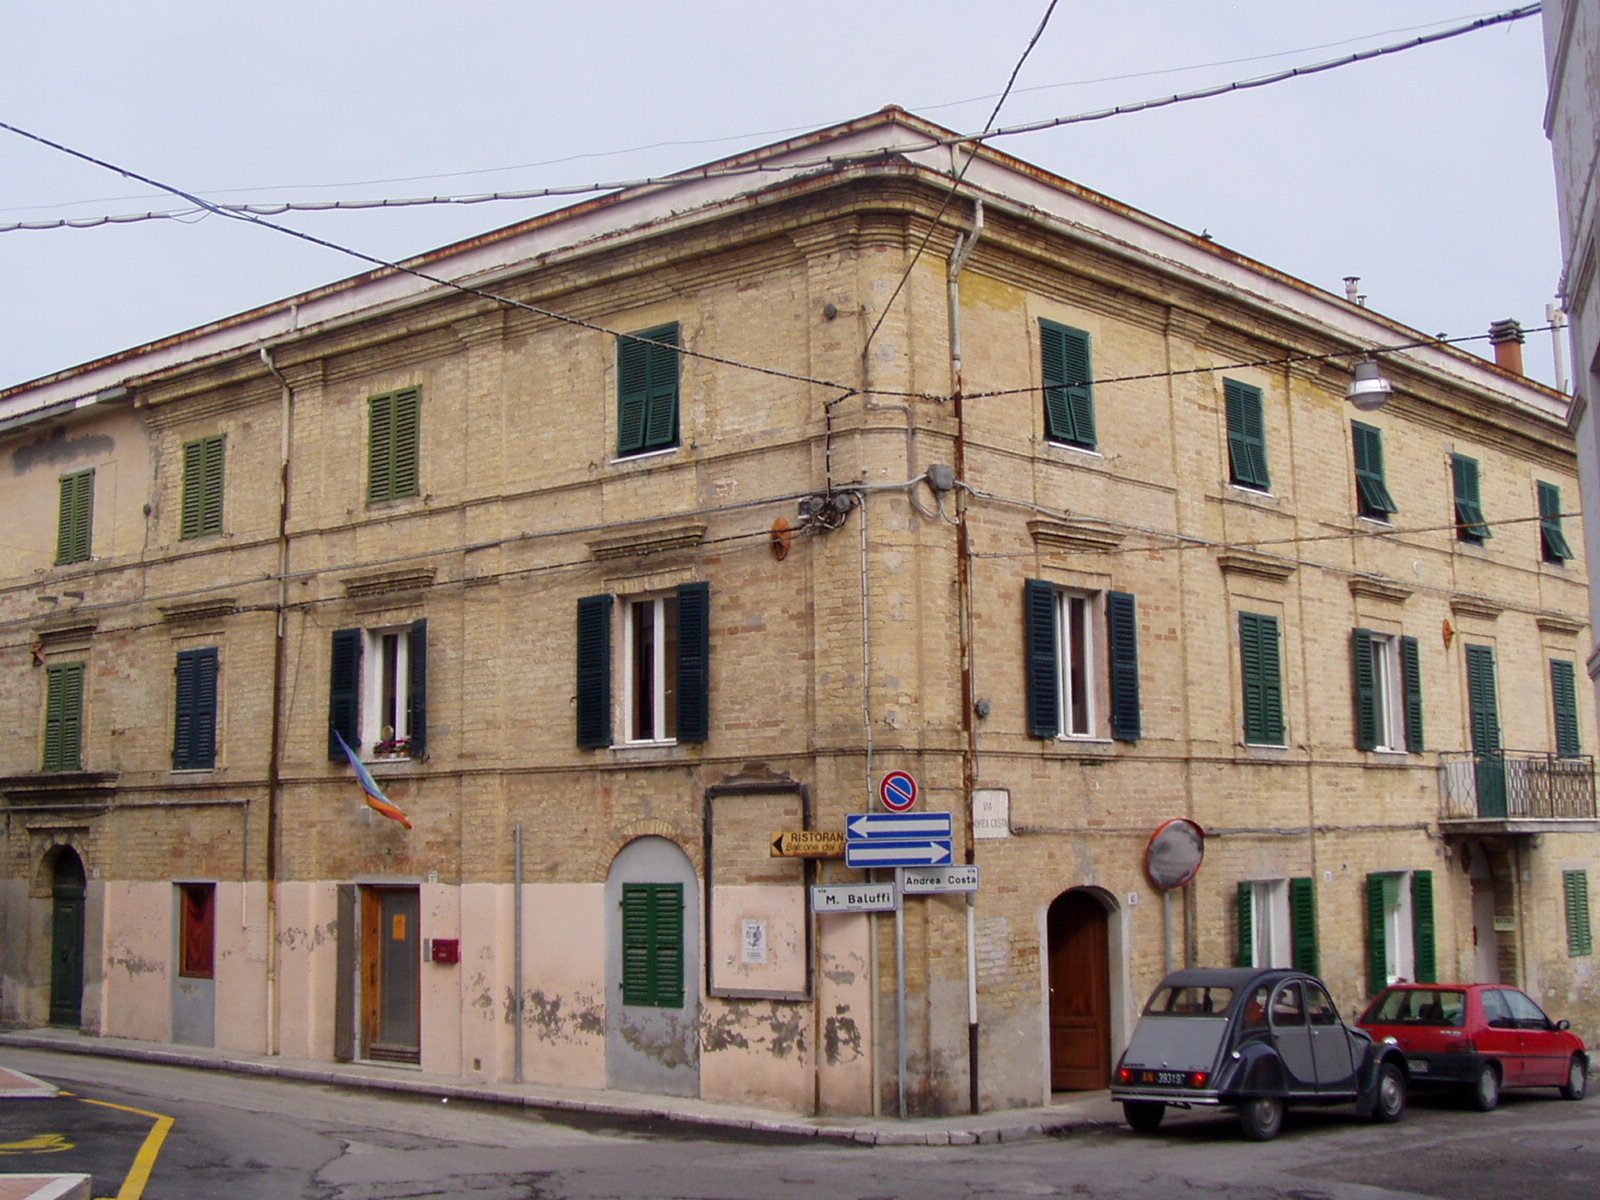 Palazzo d'abitazioni (palazzo, di appartamenti) - Falconara Marittima (AN) 